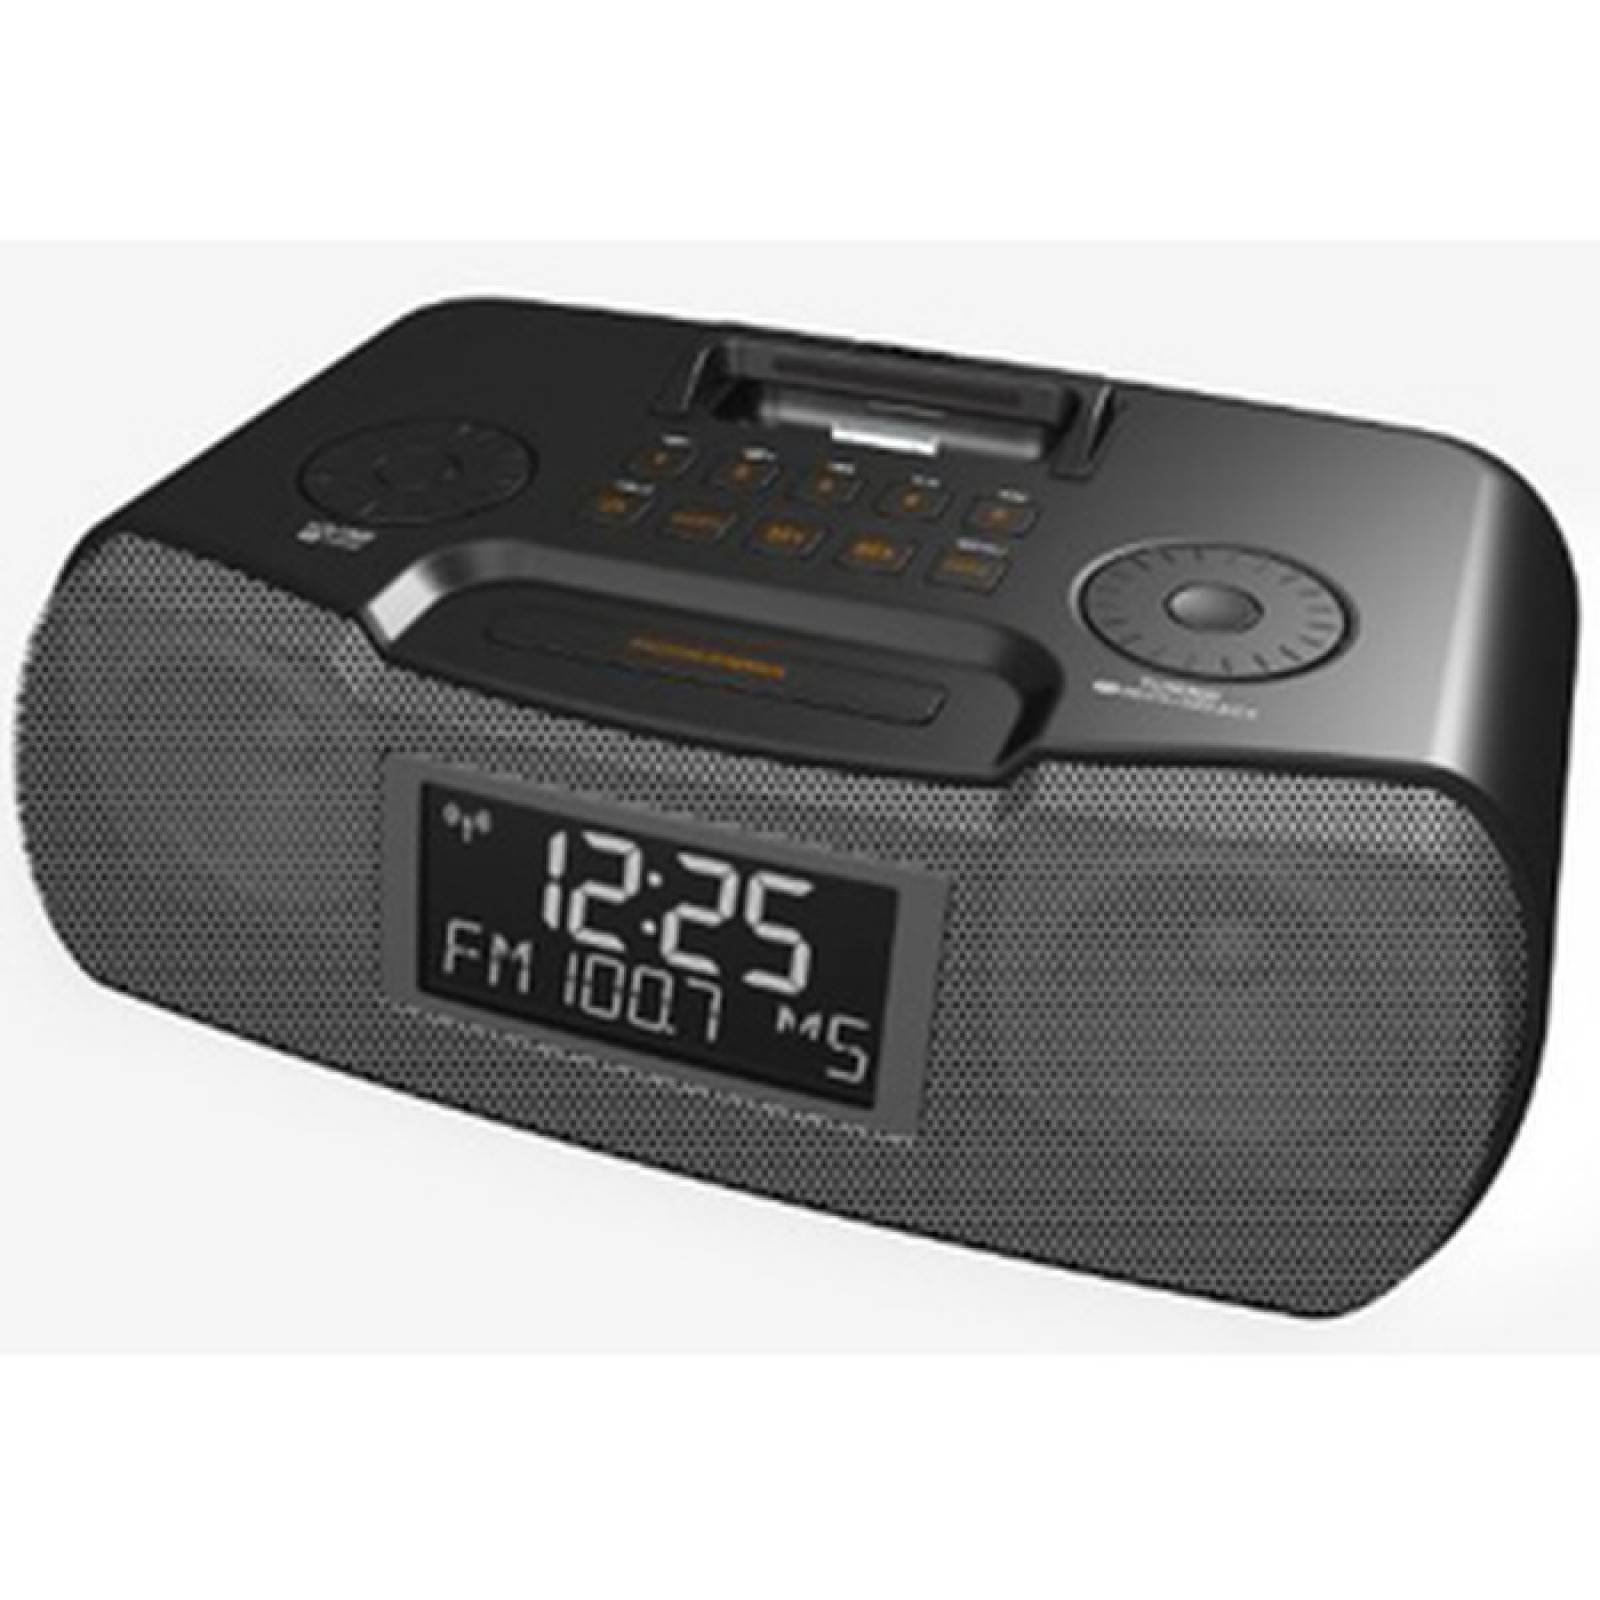 Radio reloj de escritorio Sangean RCR10  8 W RMS  Estreo  Interfaz Apple Dock